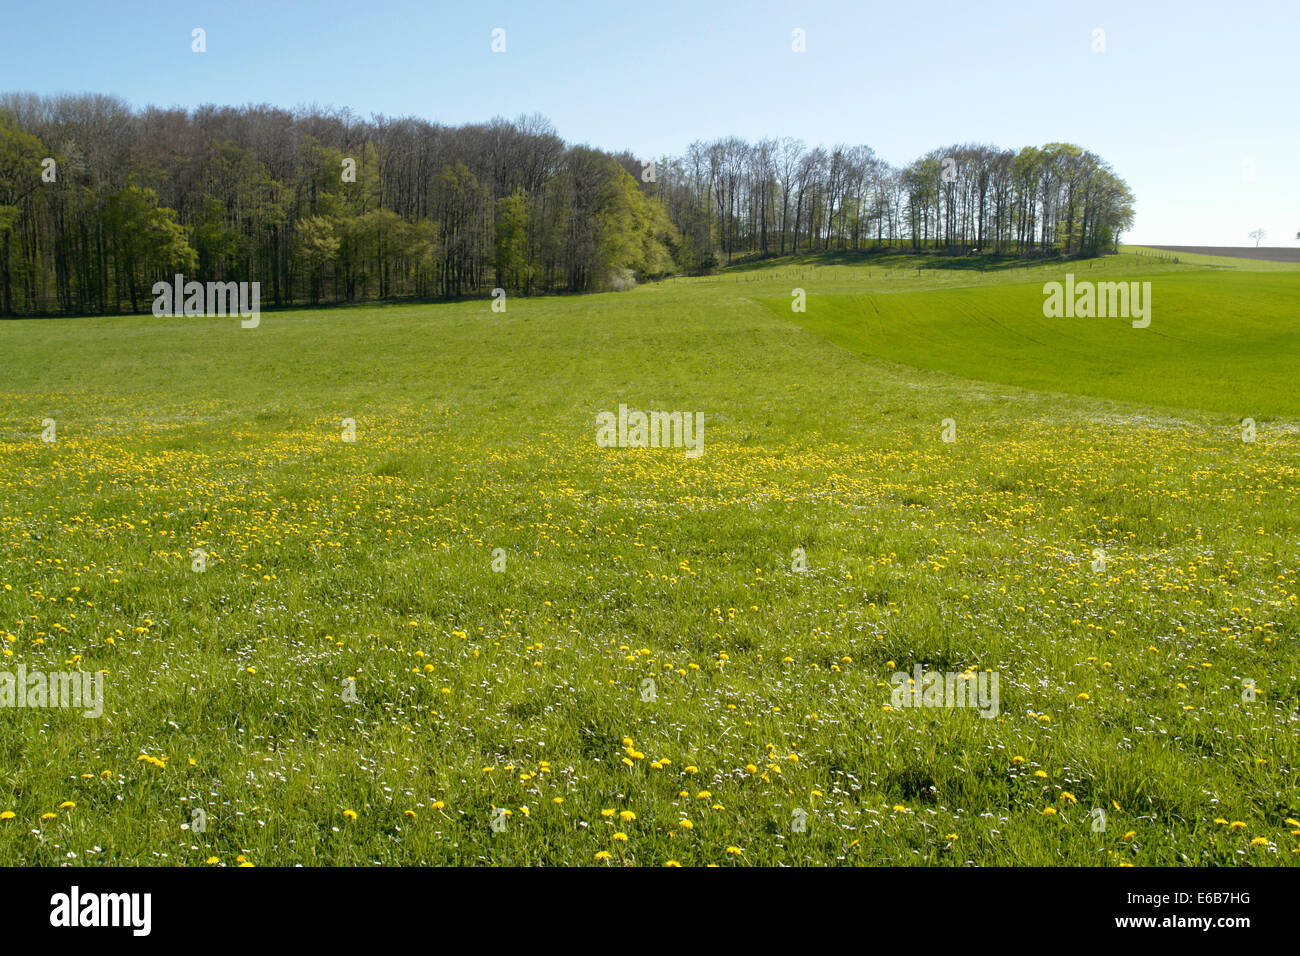 Lisière de forêt et prairie fleurie jaune dans le sud de l'Allemagne au printemps Banque D'Images